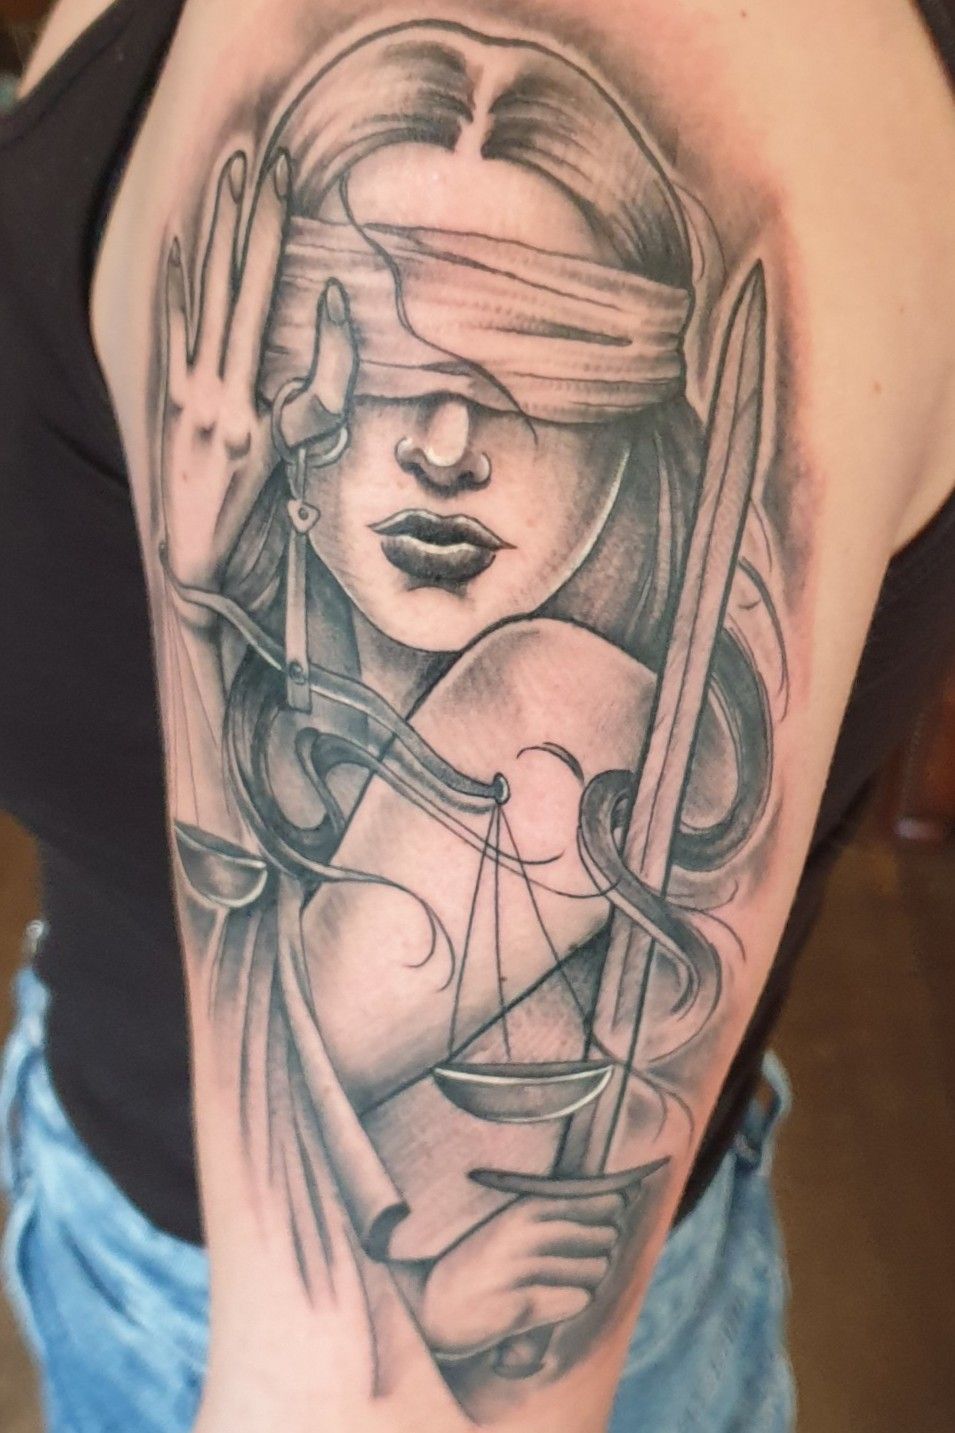 Hugo Vaz on X Finished and healed tattooshop tattooist tattoo tattoos  justice statue blackandgre httpstcoSjESWlbSCf  httpstco9TeOdd5QjN  X